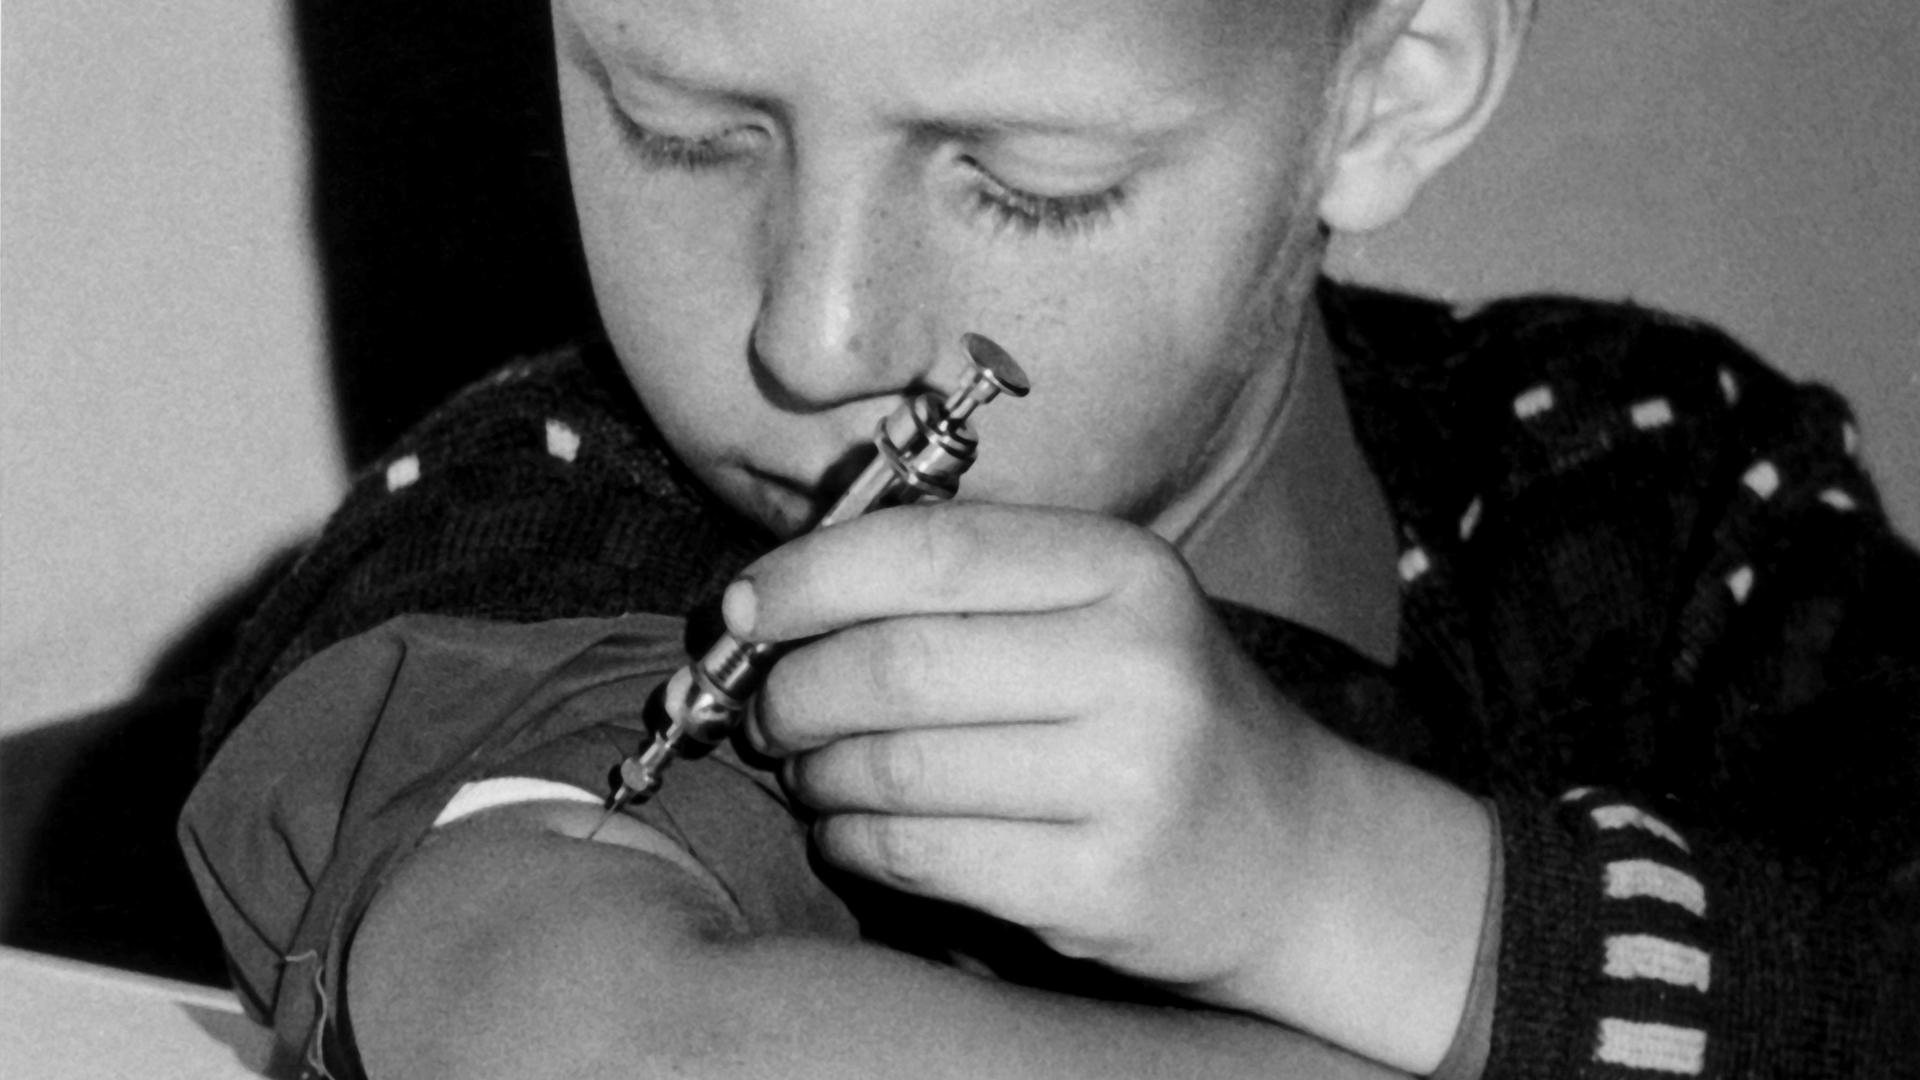 Kind spritzt sich Insulin in den Oberarm 1966.